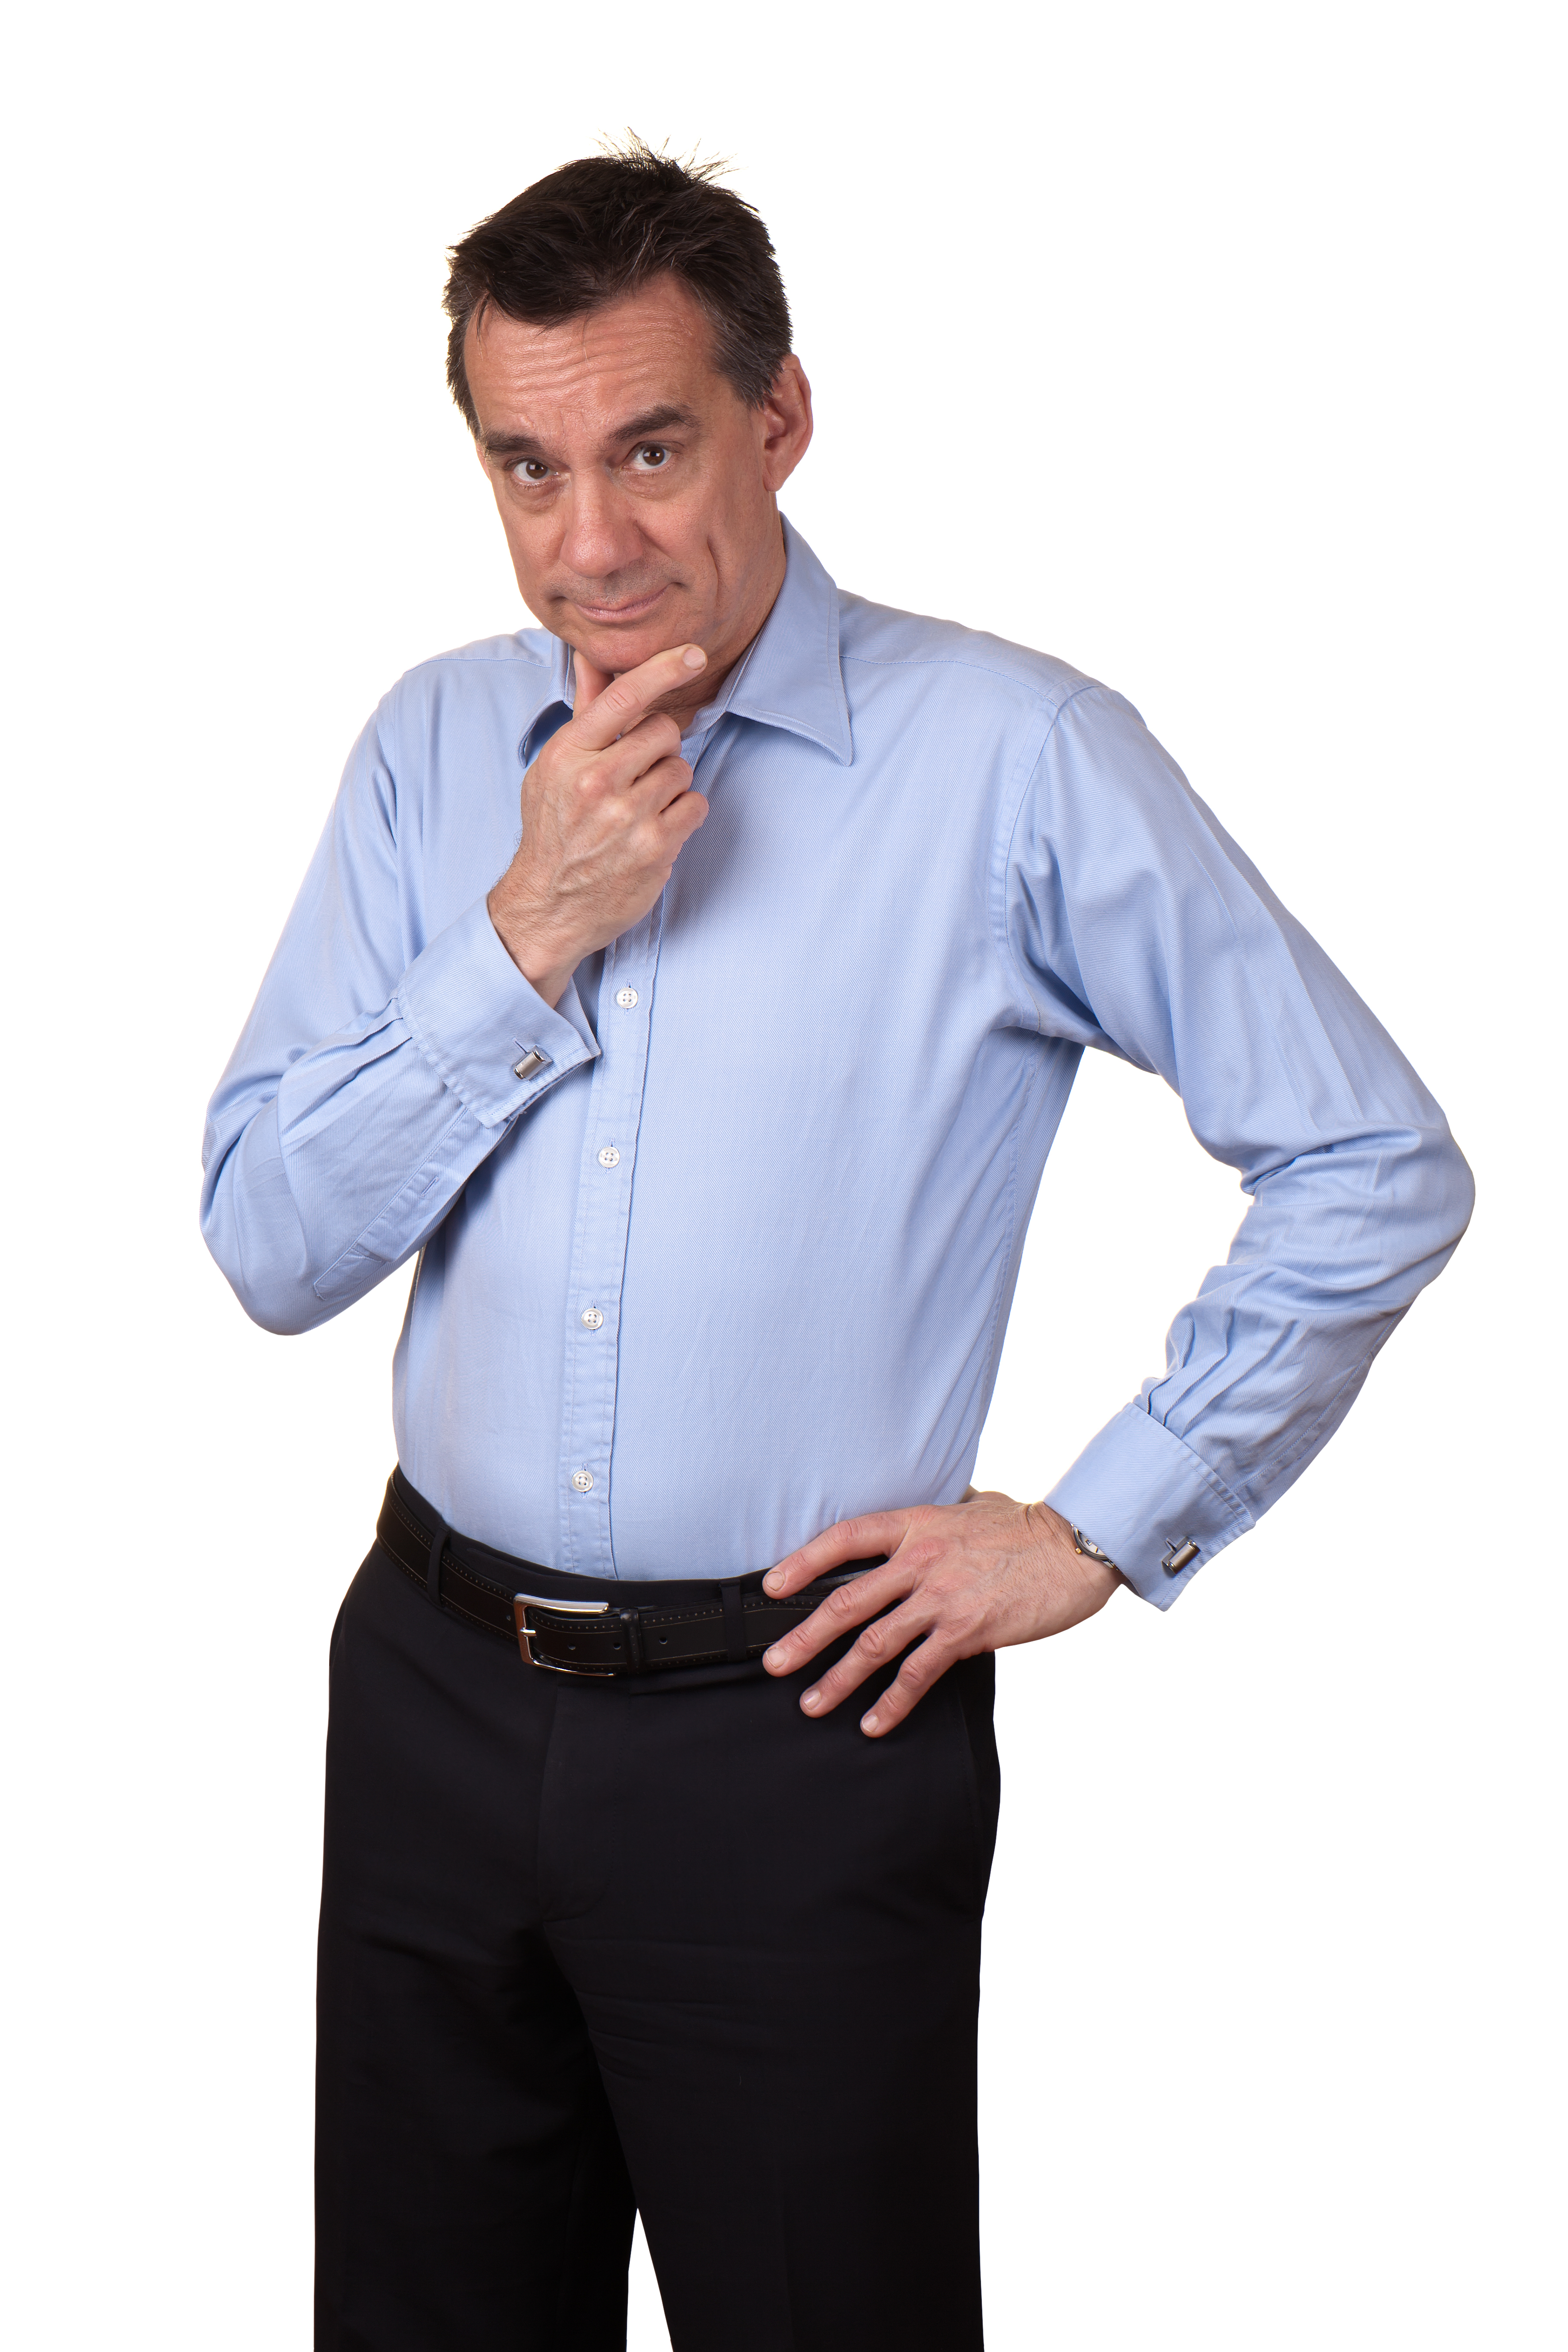 Homme d'âge moyen se frottant le menton | Source : Shutterstock